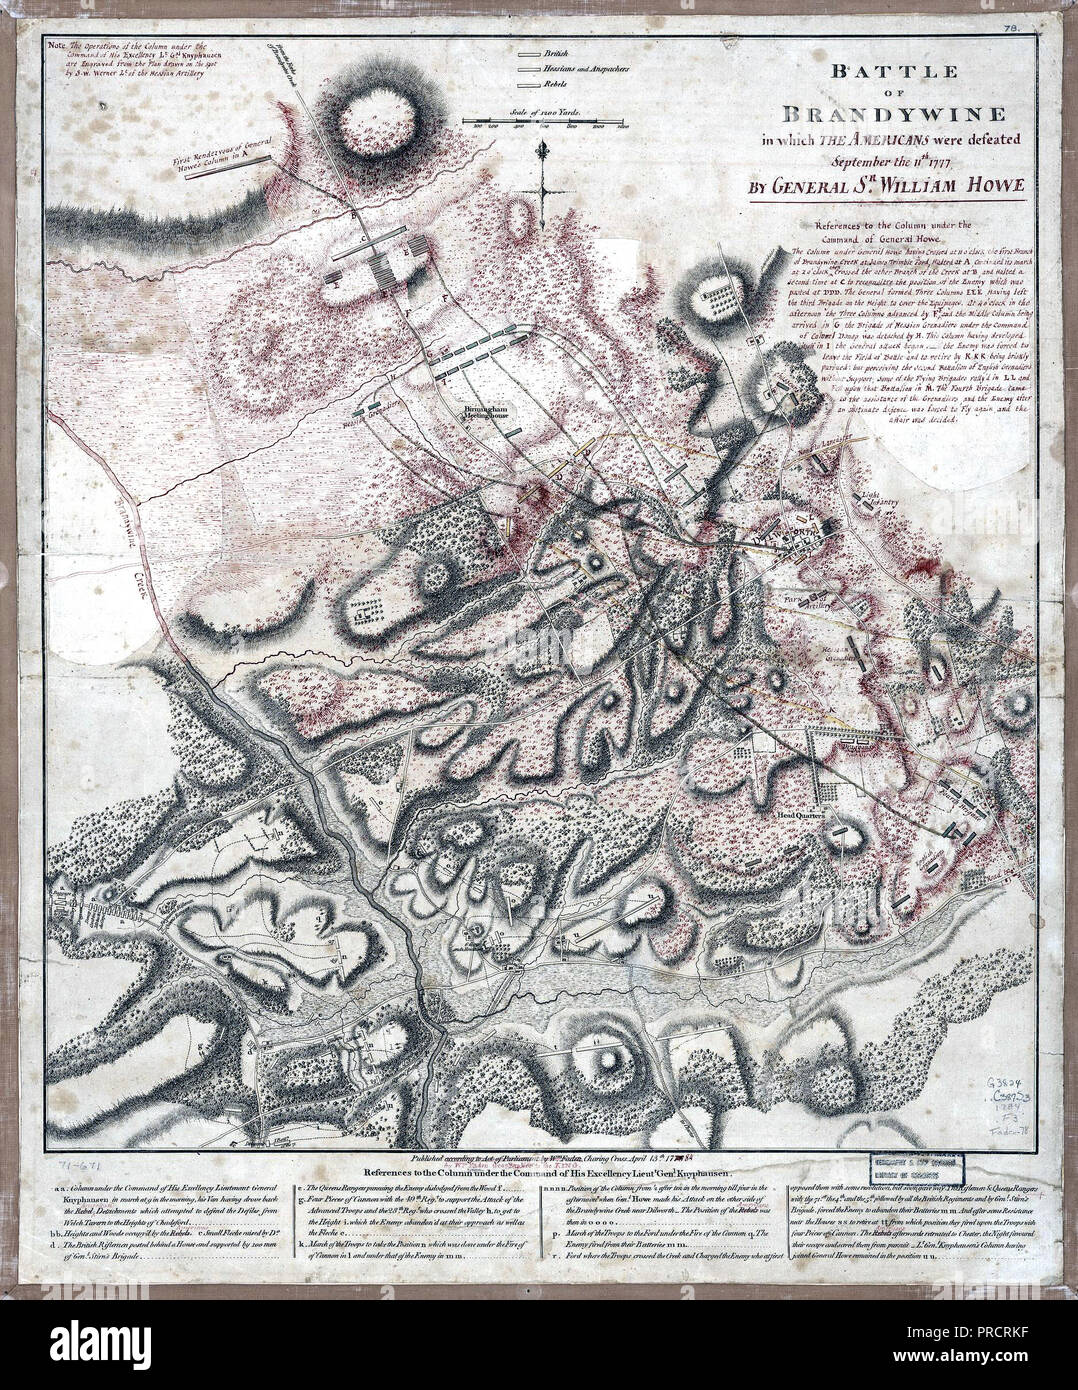 Vintage Karten/Antique Maps - Schlacht von Brandywine, in der die Amerikaner wurden abgelehnt: September 11th, 1777 von General Sr. William Howe Stockfoto